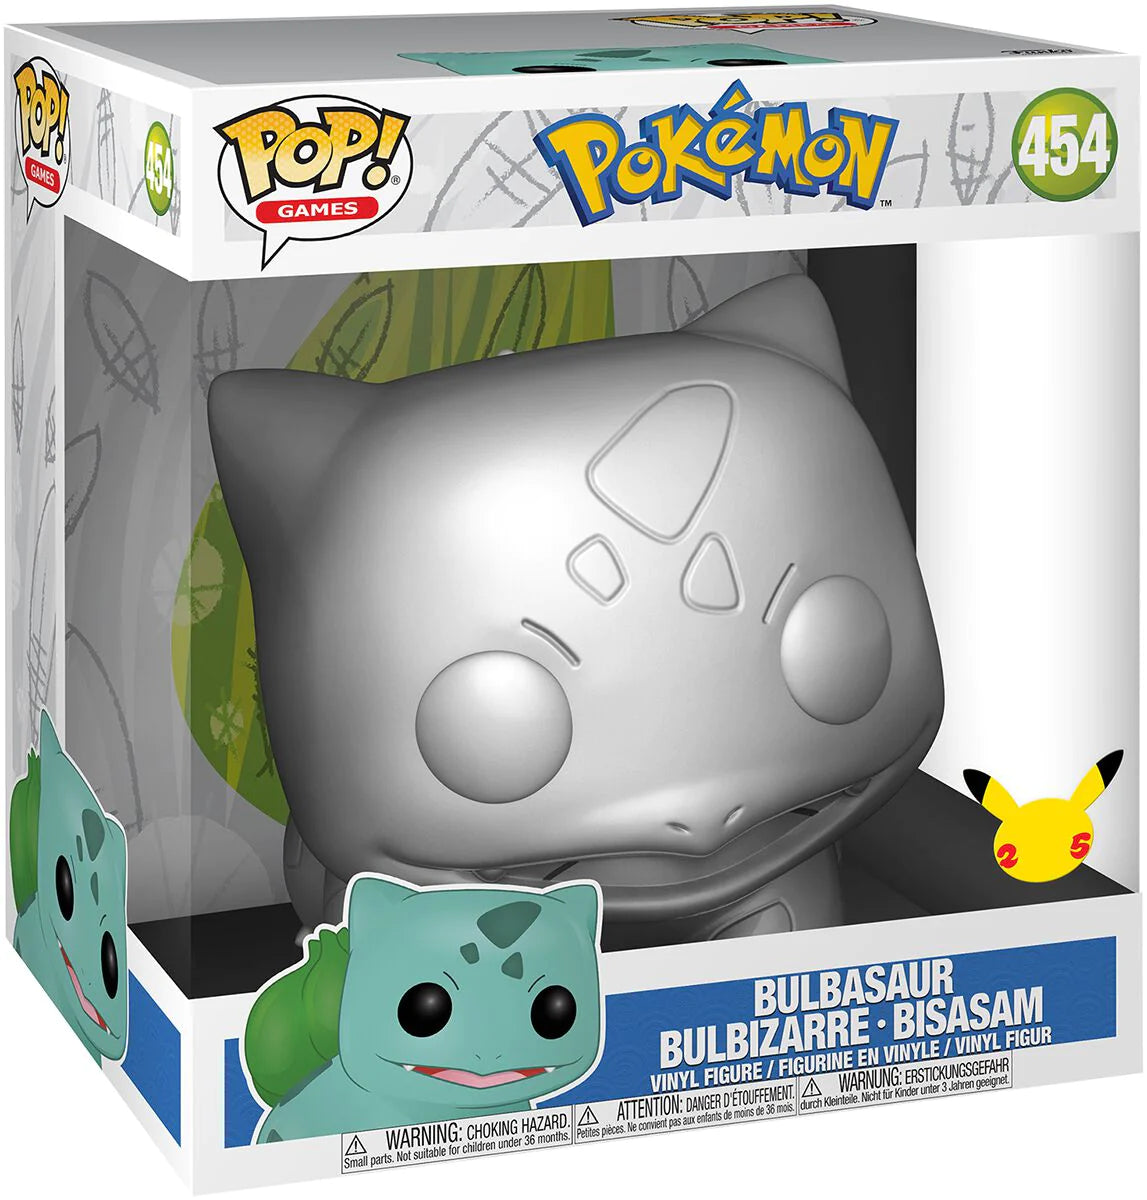 Pop! Games - Pokemon - Bulbasaur #454 (Jumbo Pop)